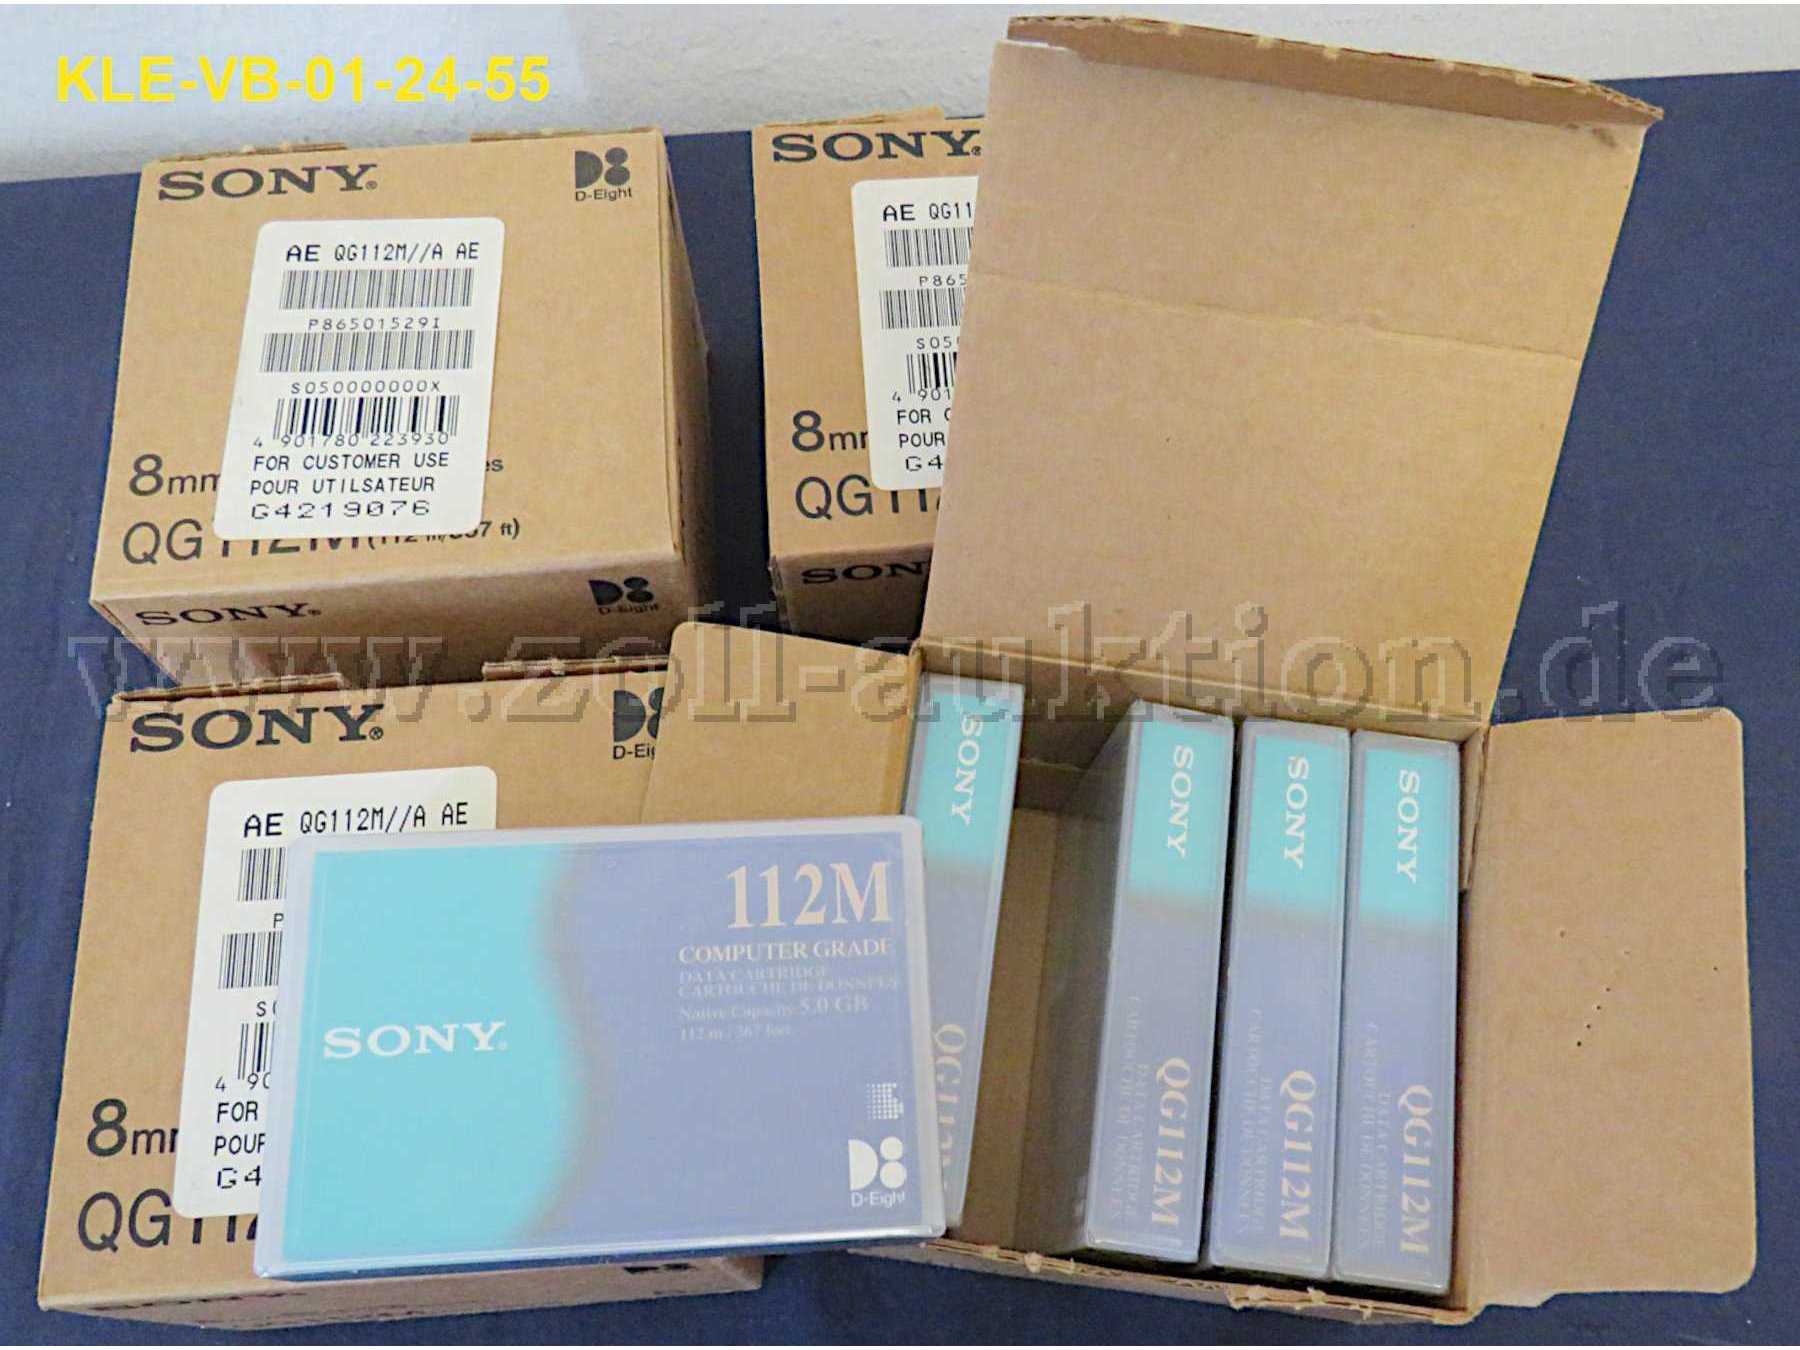 20 Stück Sony Datenkassetten